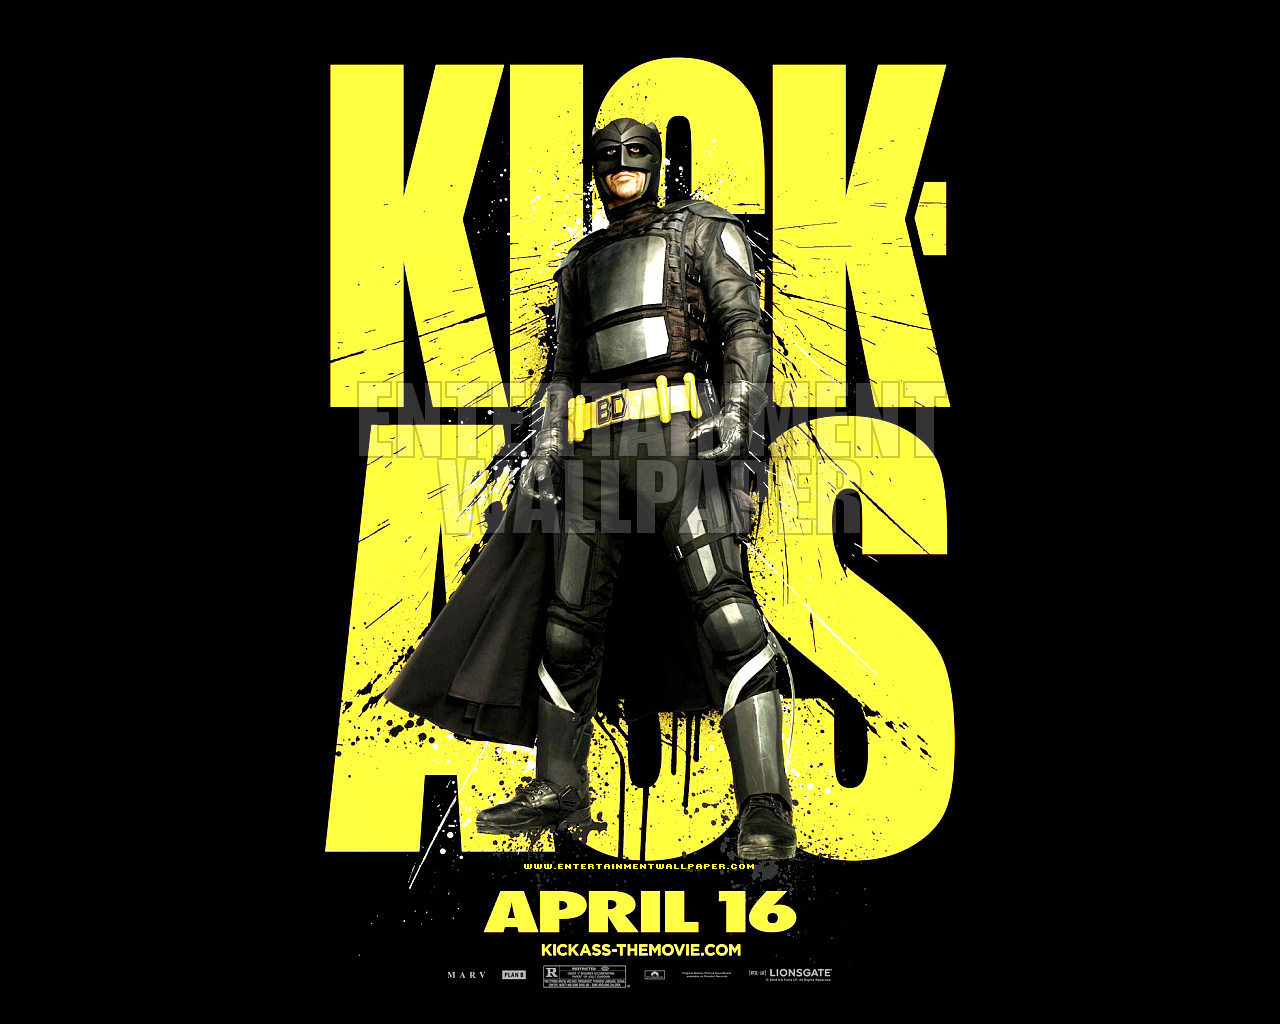 Kick Ass Wallpaper - 1280x1024 Desktop Download page